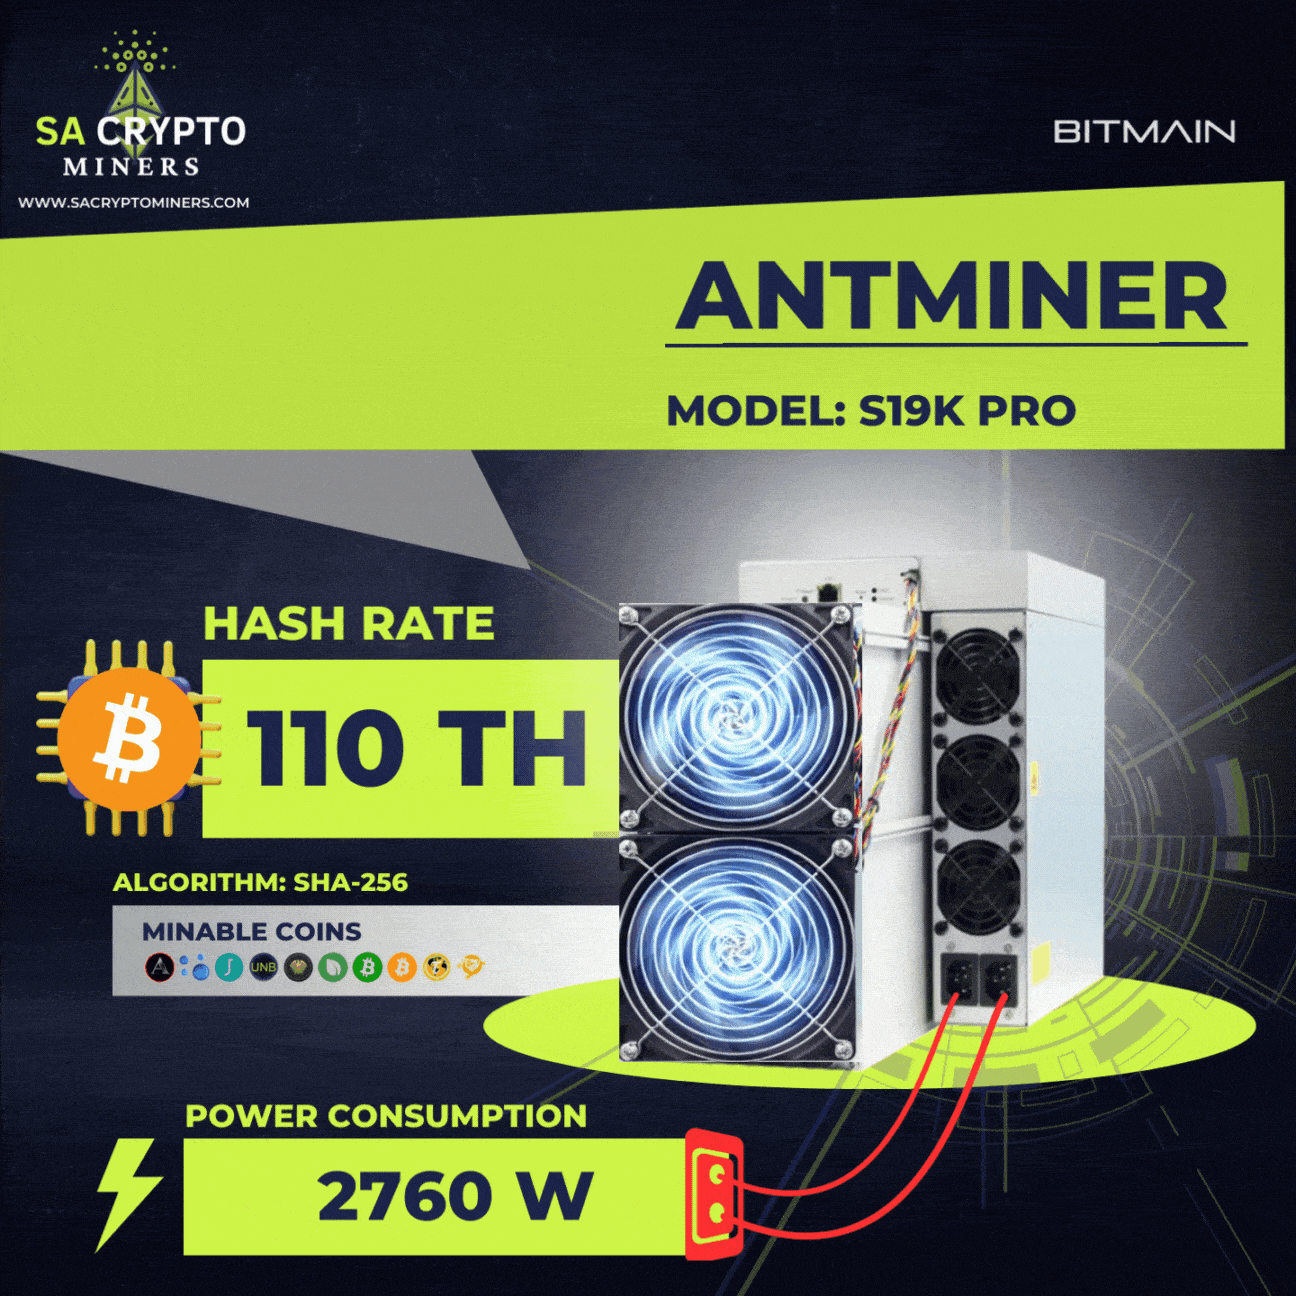 New Bitmain Antminer S19k Pro 110TH/S Bitcoin Miner